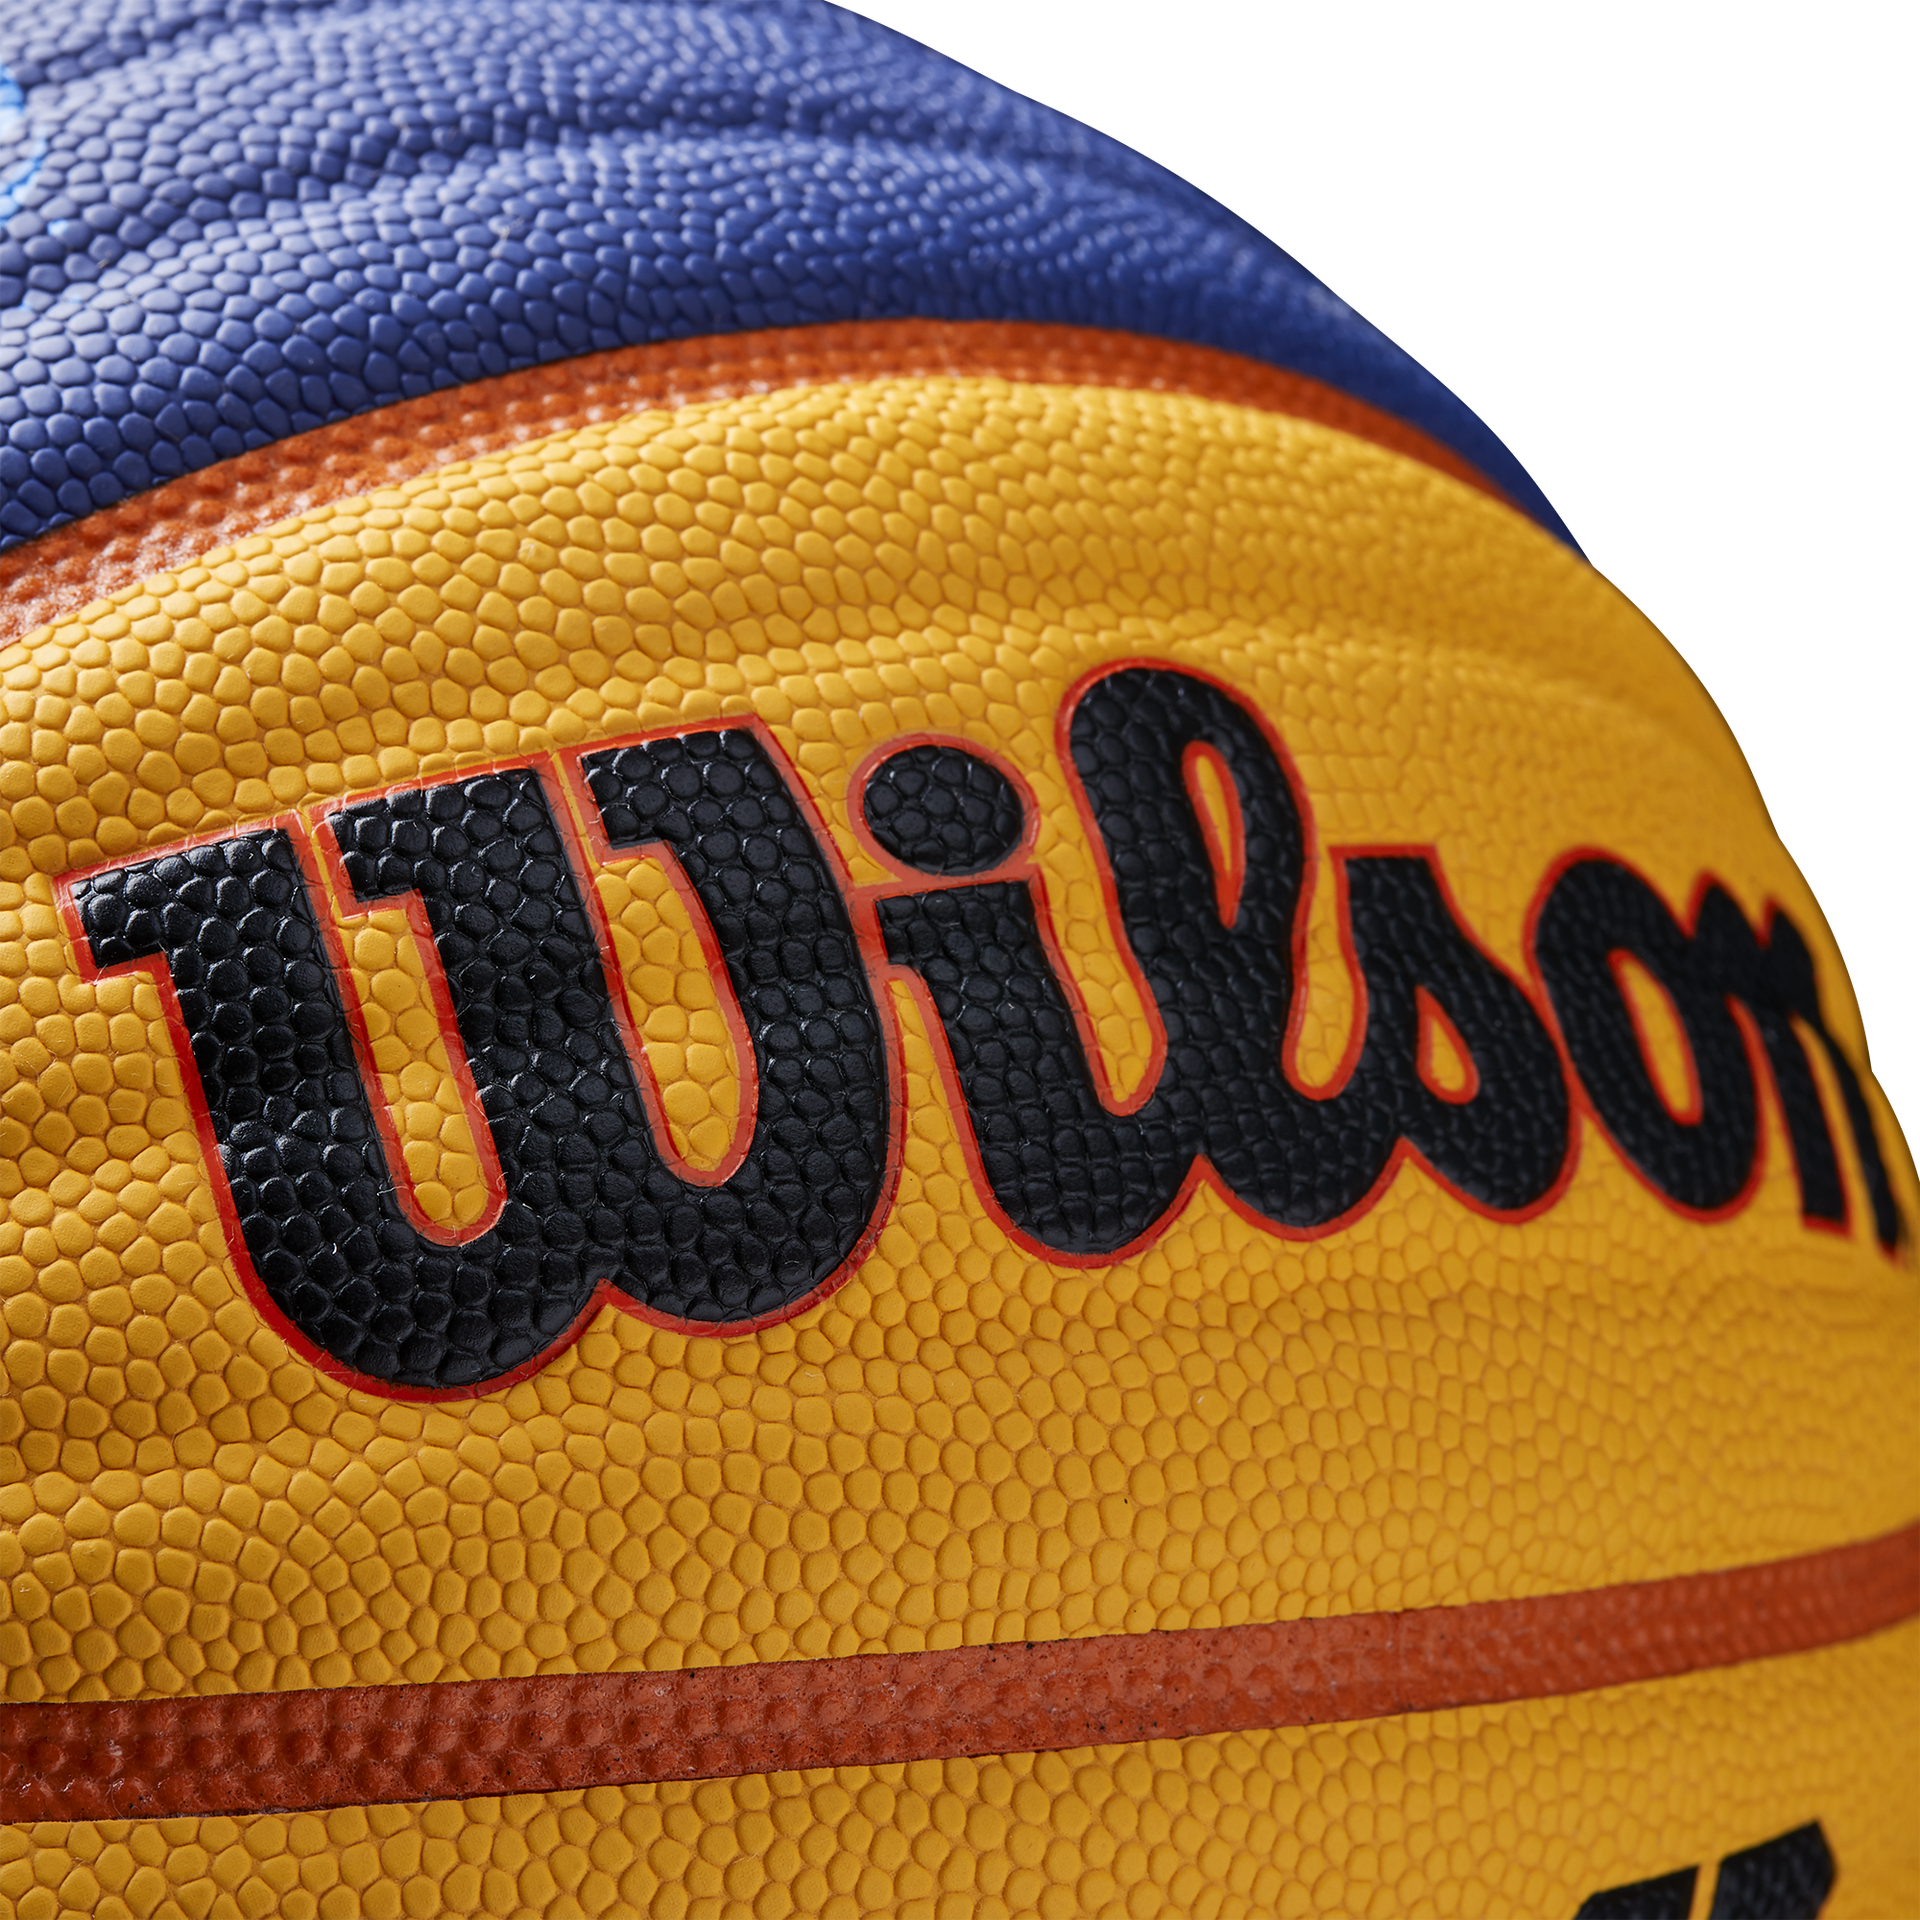 Balón de Baloncesto Wilson Fiba 3X3 Official - Wilson